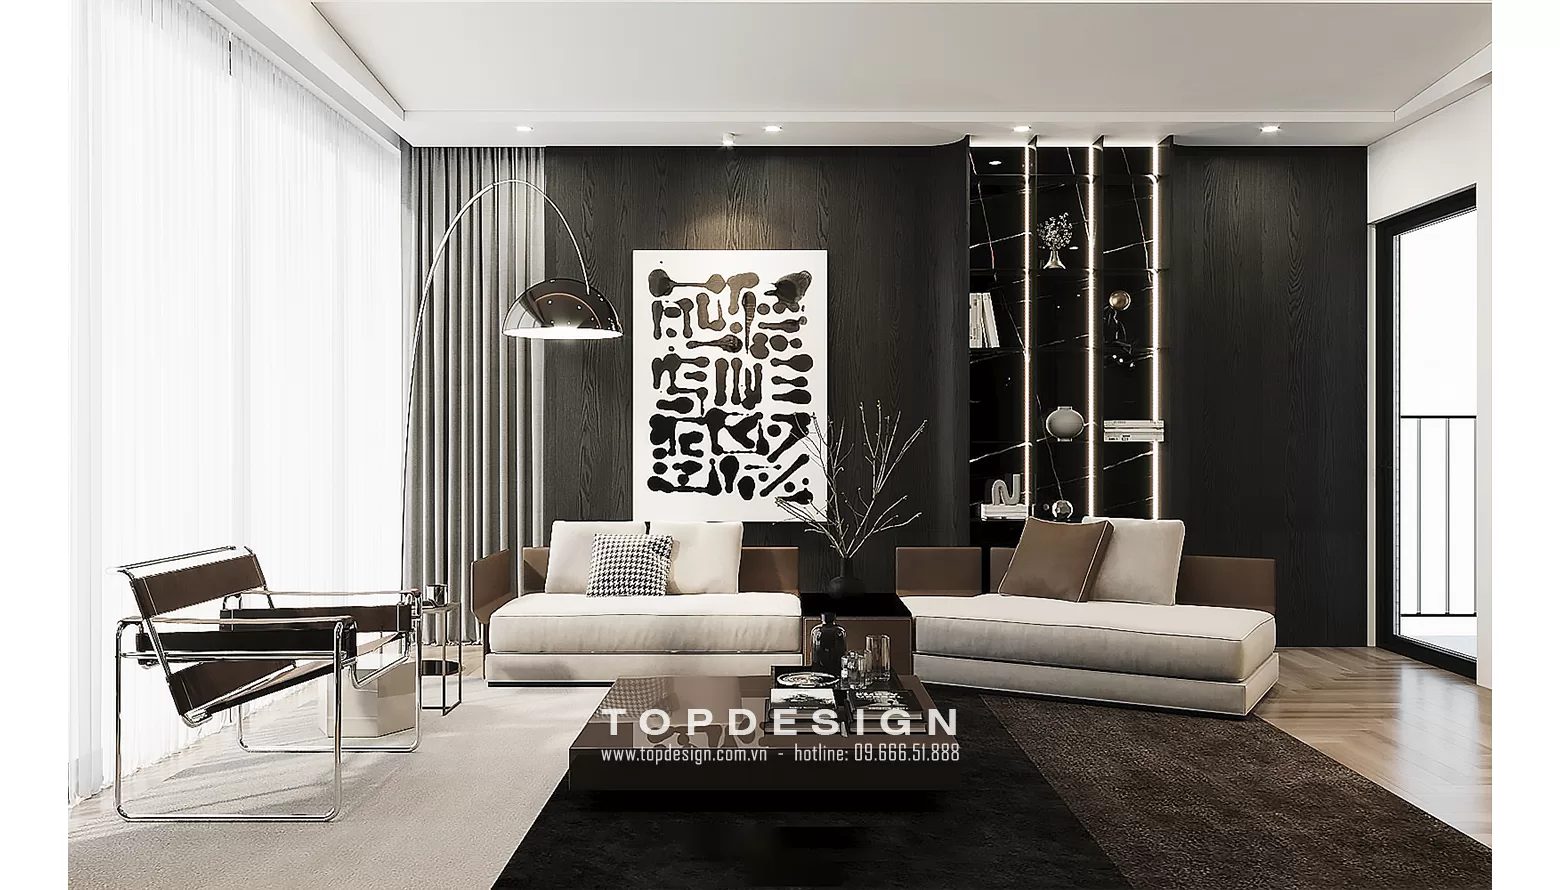 Mẫu thiết kế nội thất chung cư - TOPDESIGN - 1